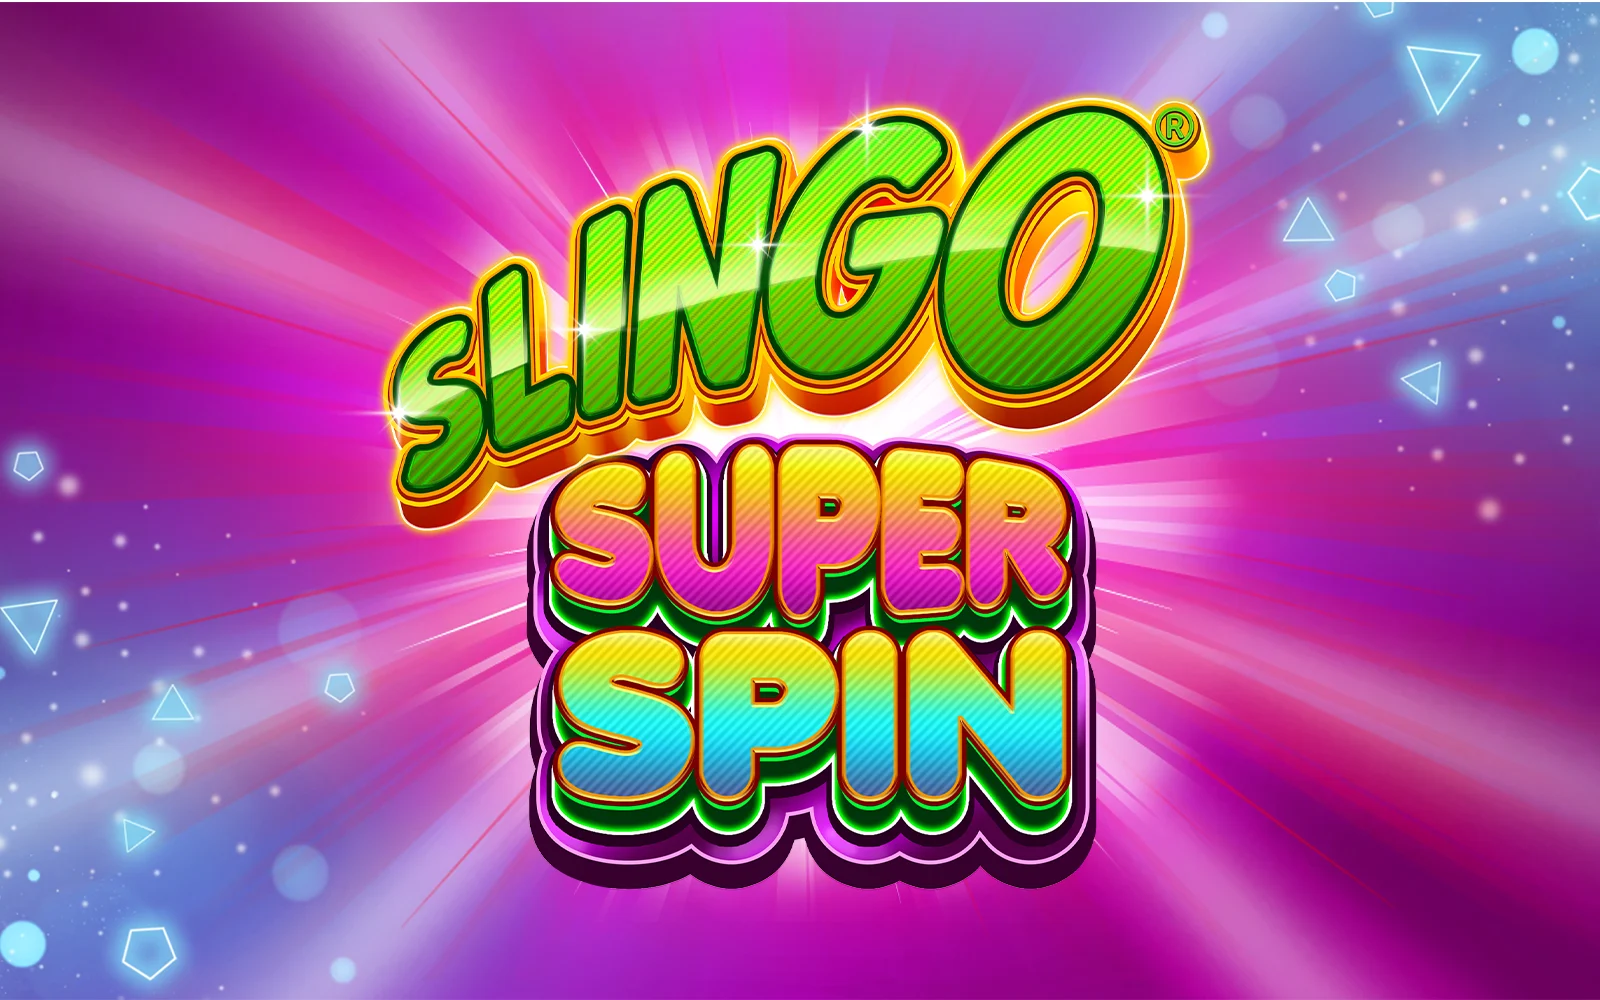 Joacă Slingo Super Spin în cazinoul online Starcasino.be